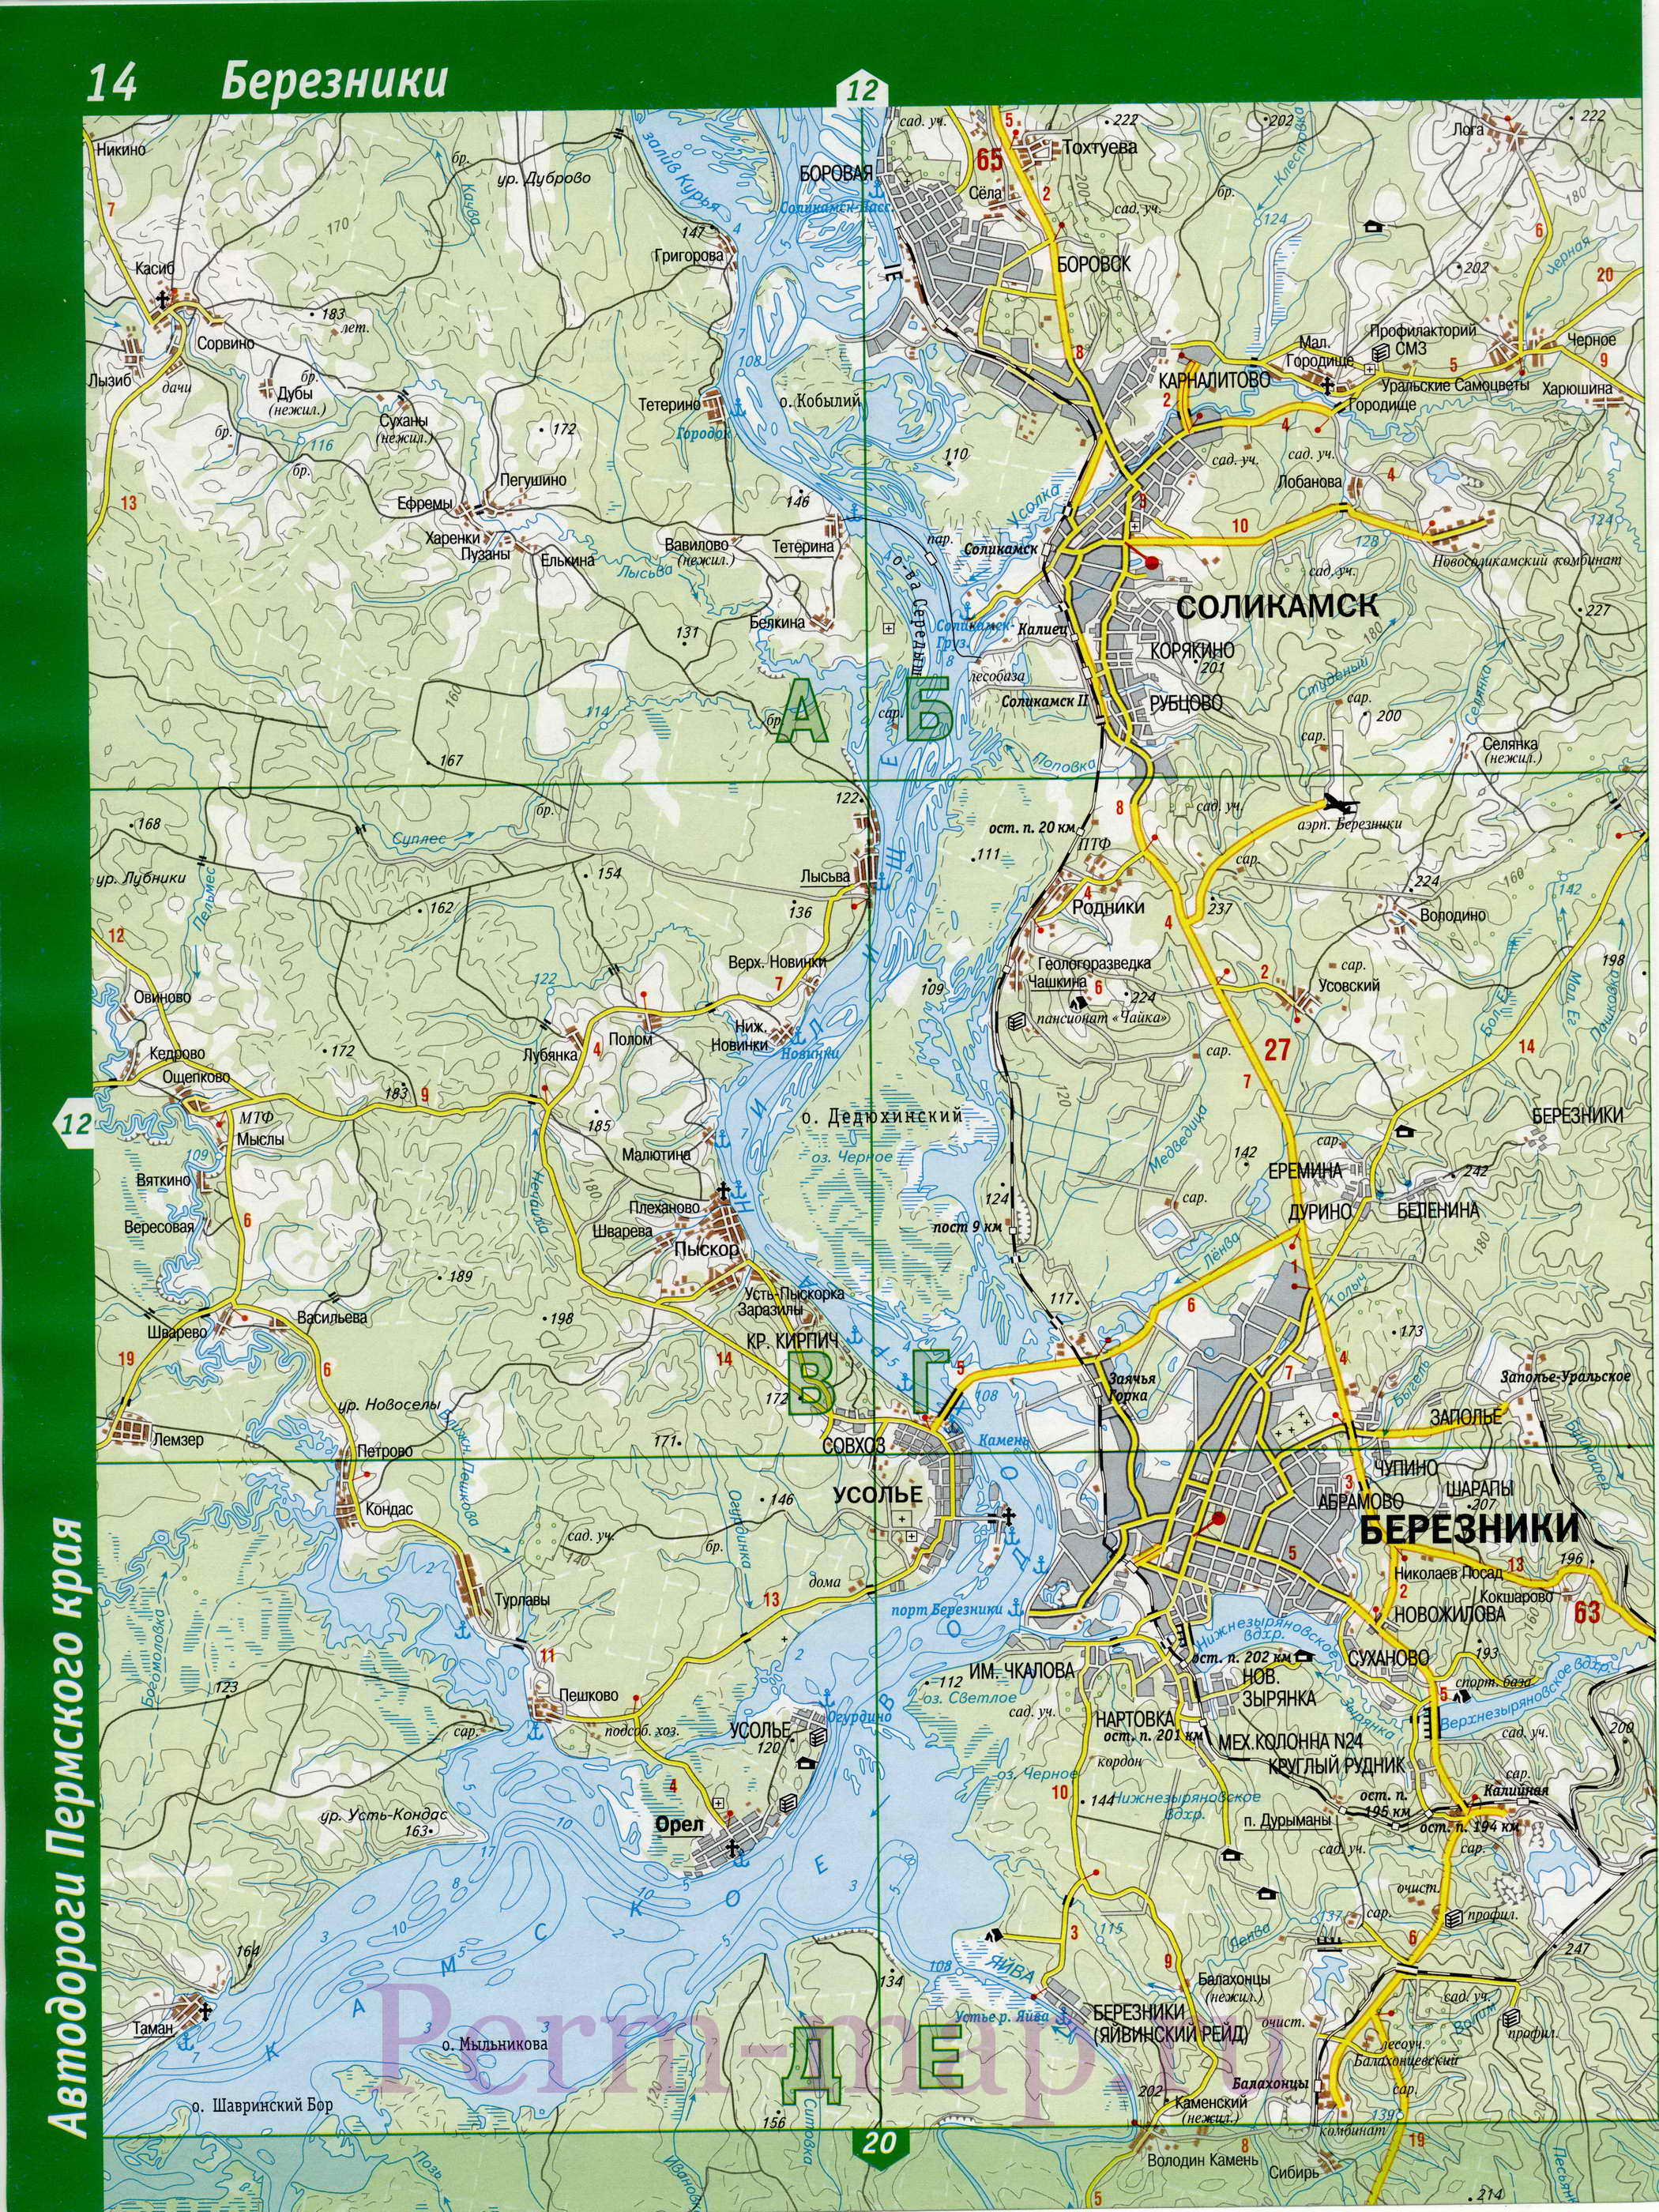  Карта Соликамска. Подробная автомобильная карта города Соликамск, Пермский край, A0 - 